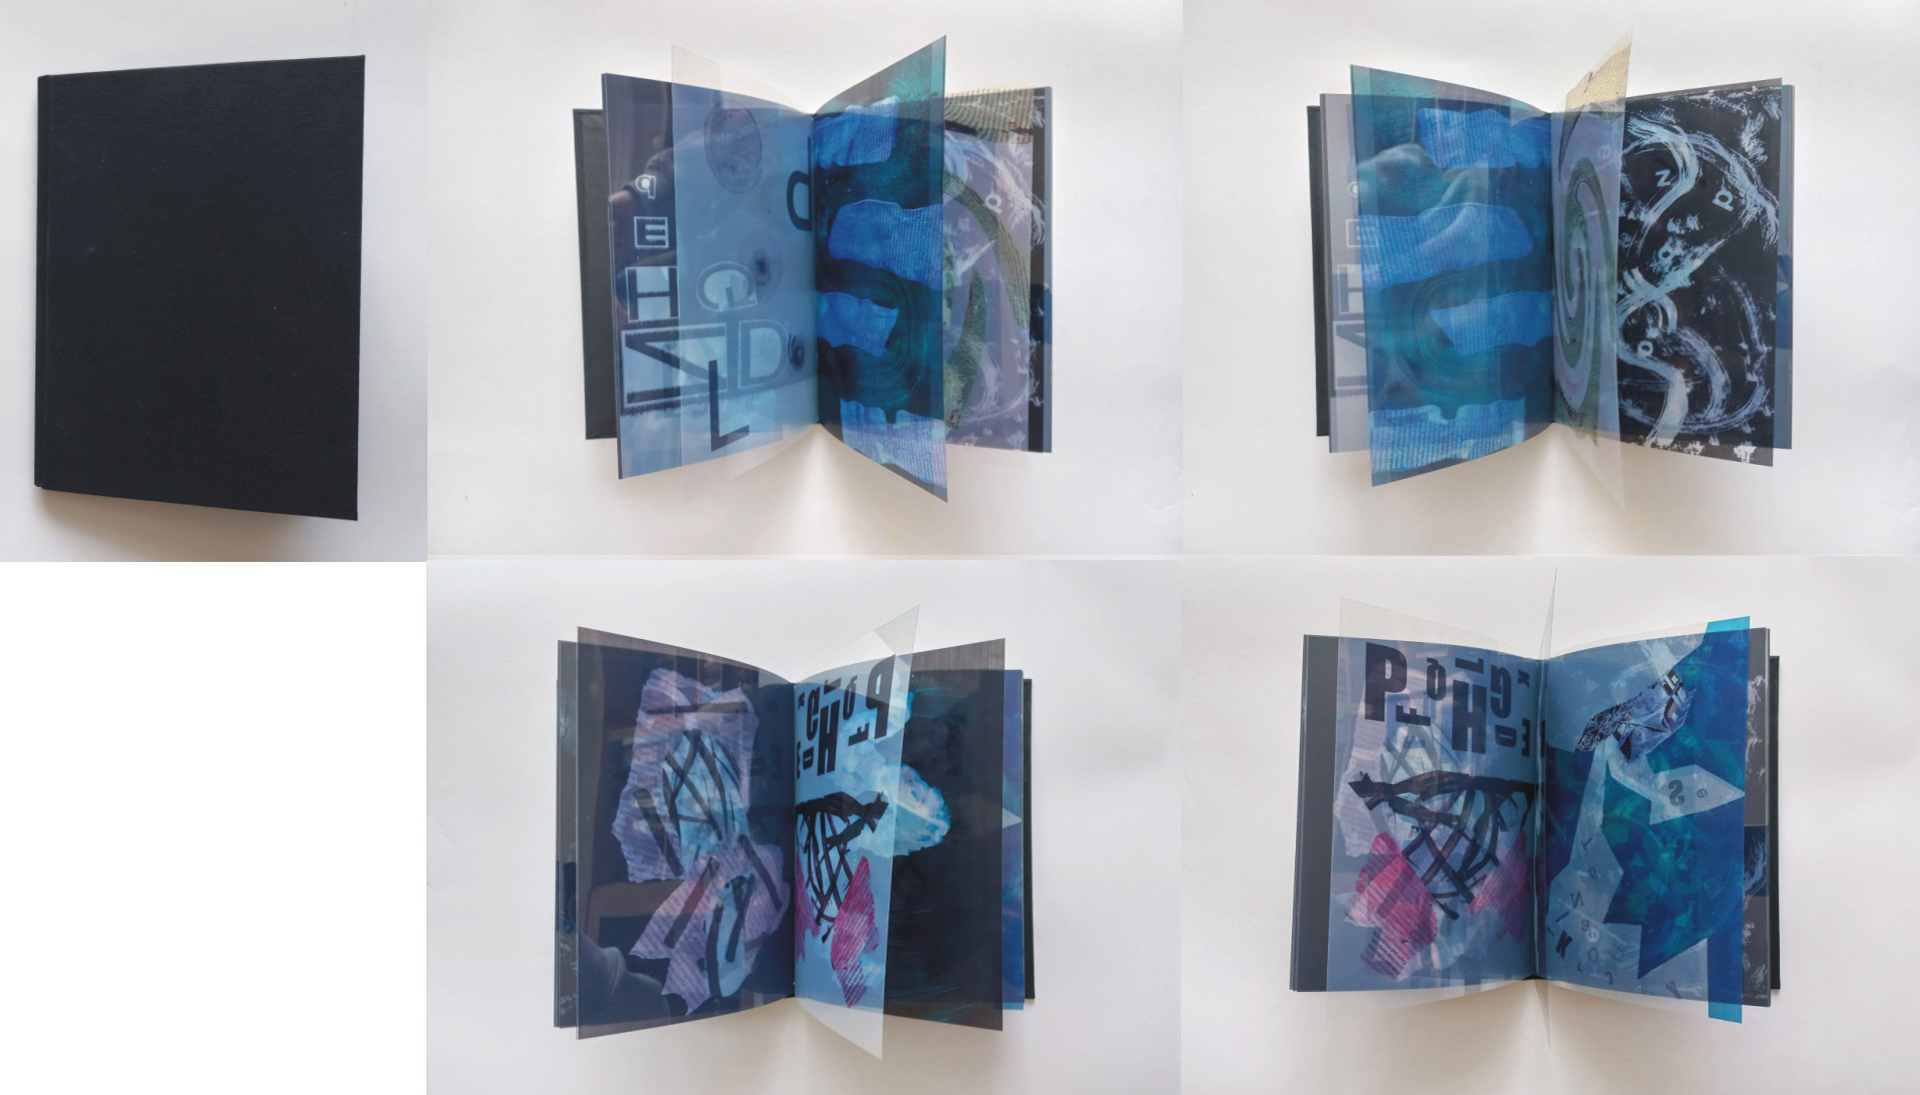 Unikatowa książka artystyczna, okładka czarna, płócienna, twarda, strony – folia przezroczysta zadrukowana motywami graficznymi i literniczymi  